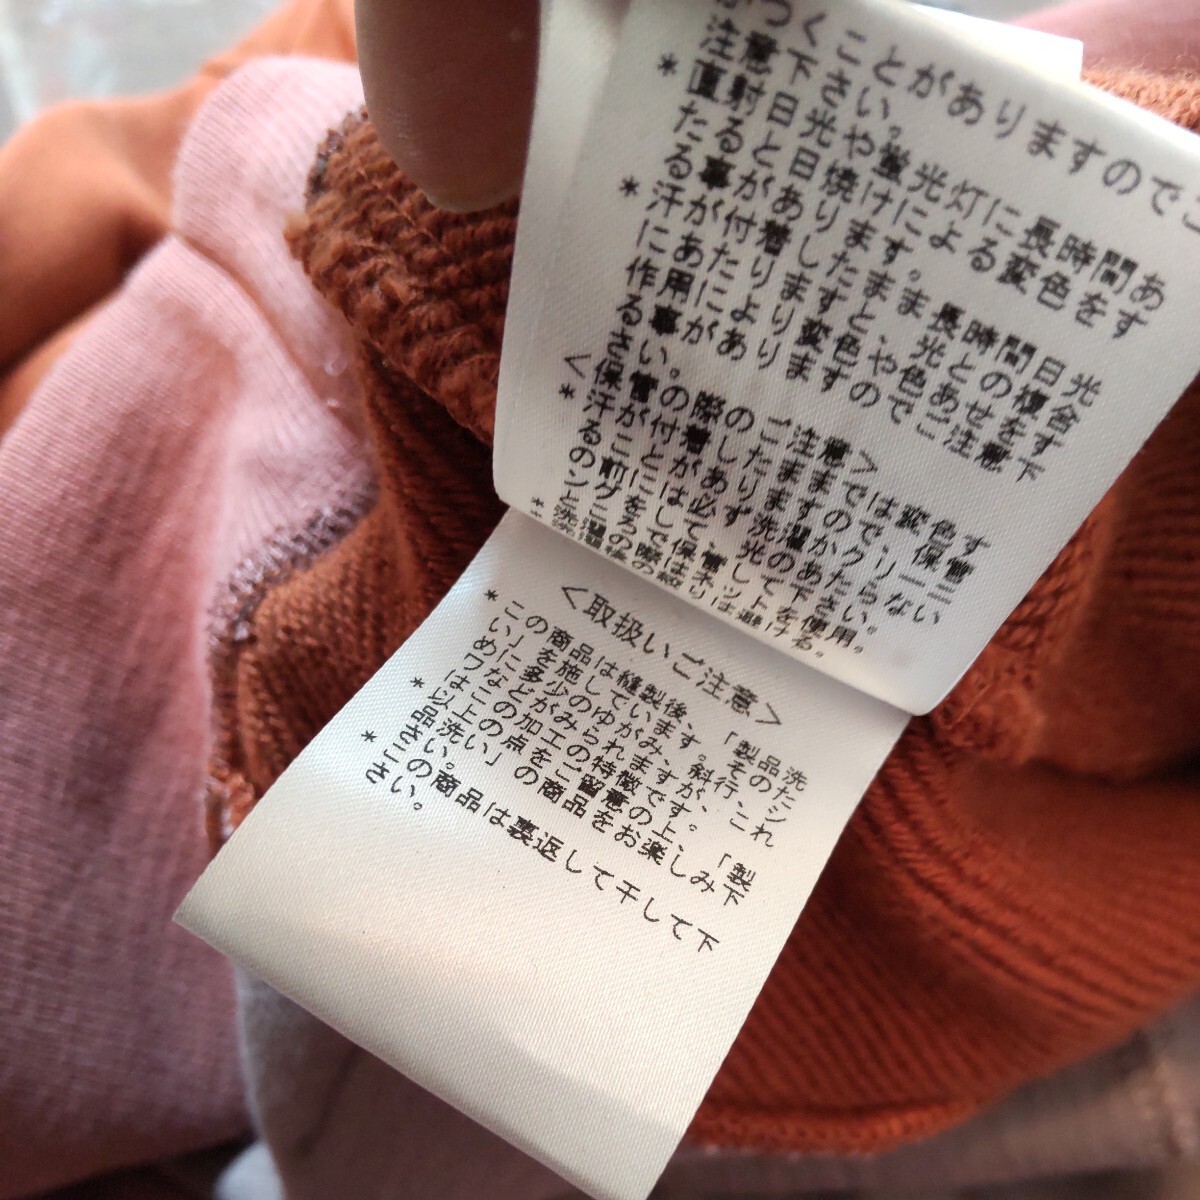 # не использовался #PS Paul Smith # футболка # Zebra вышивка # Parker карман есть # обычная цена 24,200 иен #Z